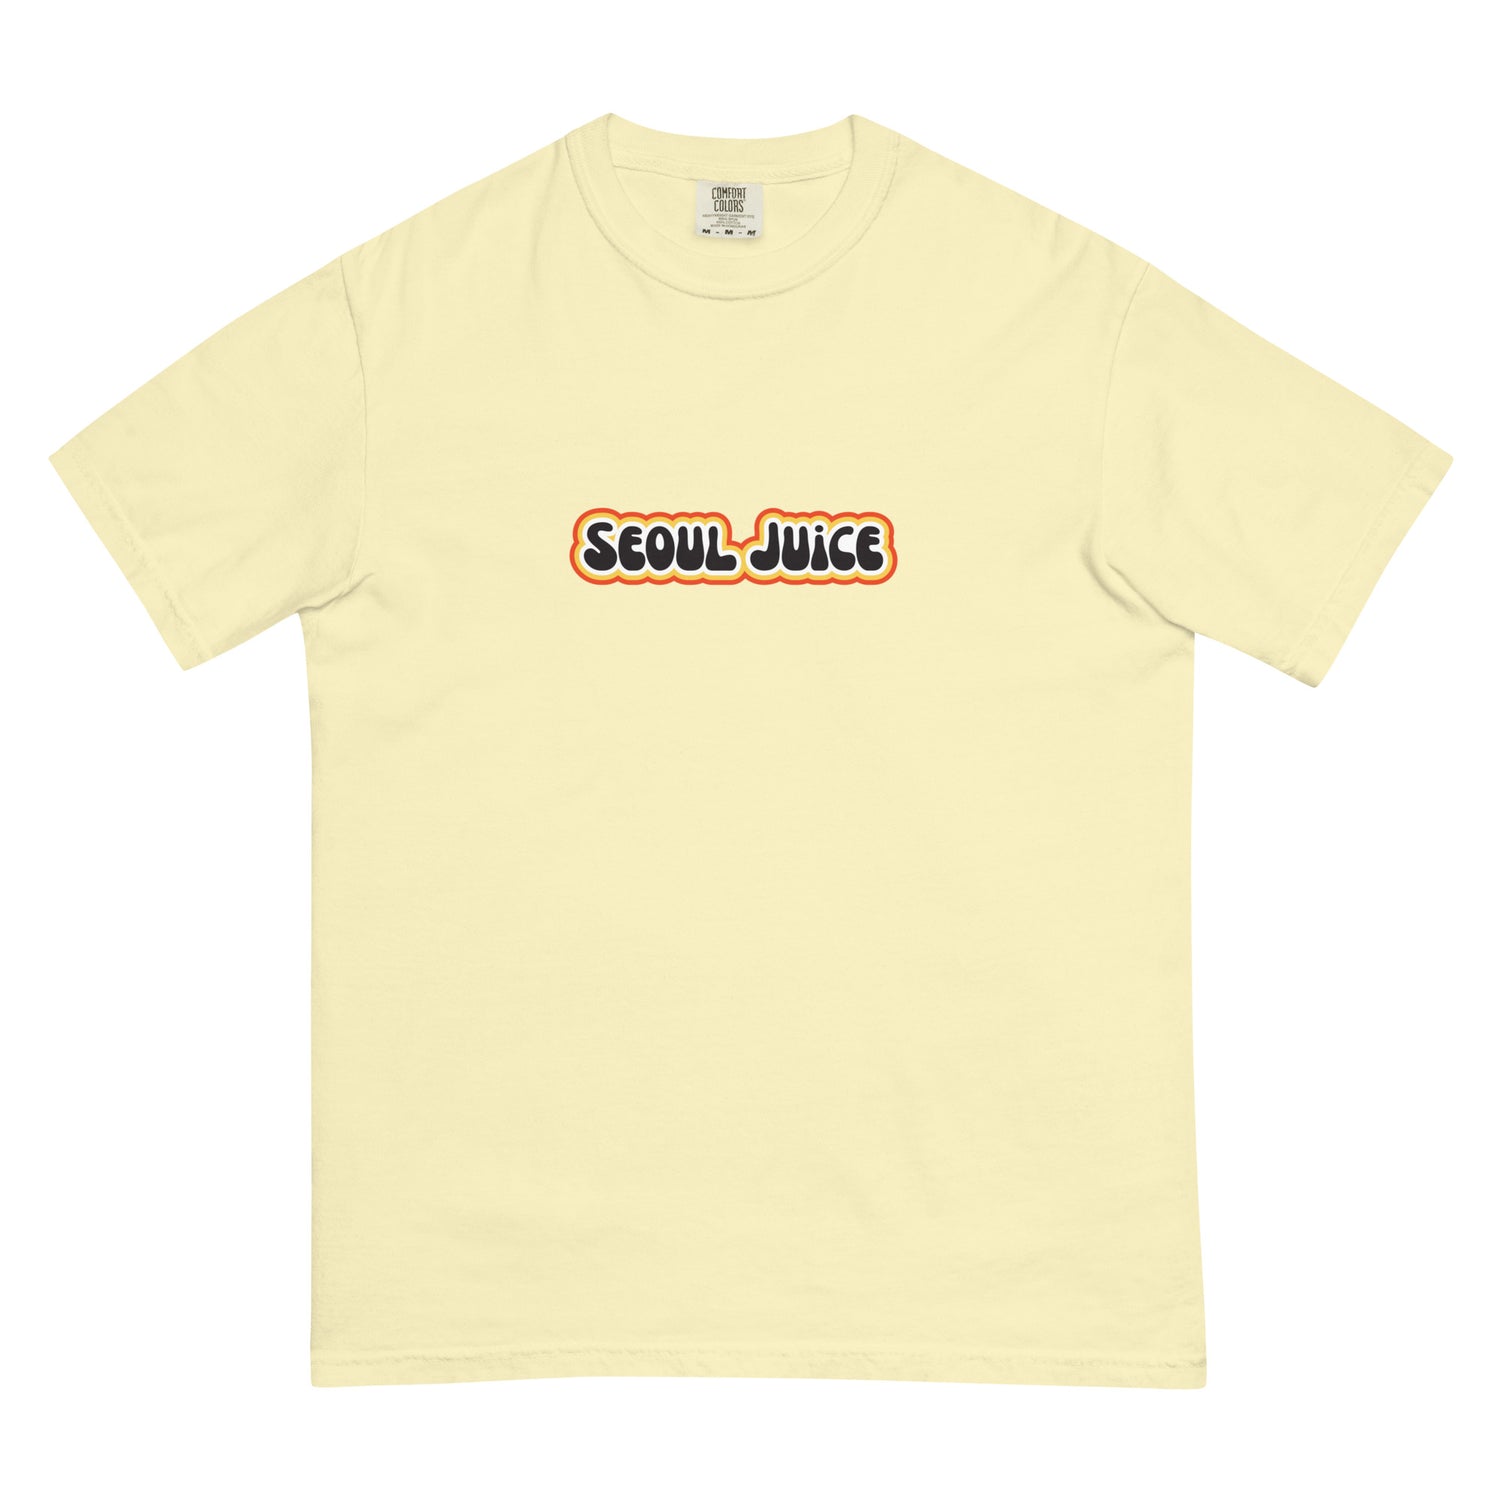 Seoul Juice Center Spun T-Shirt